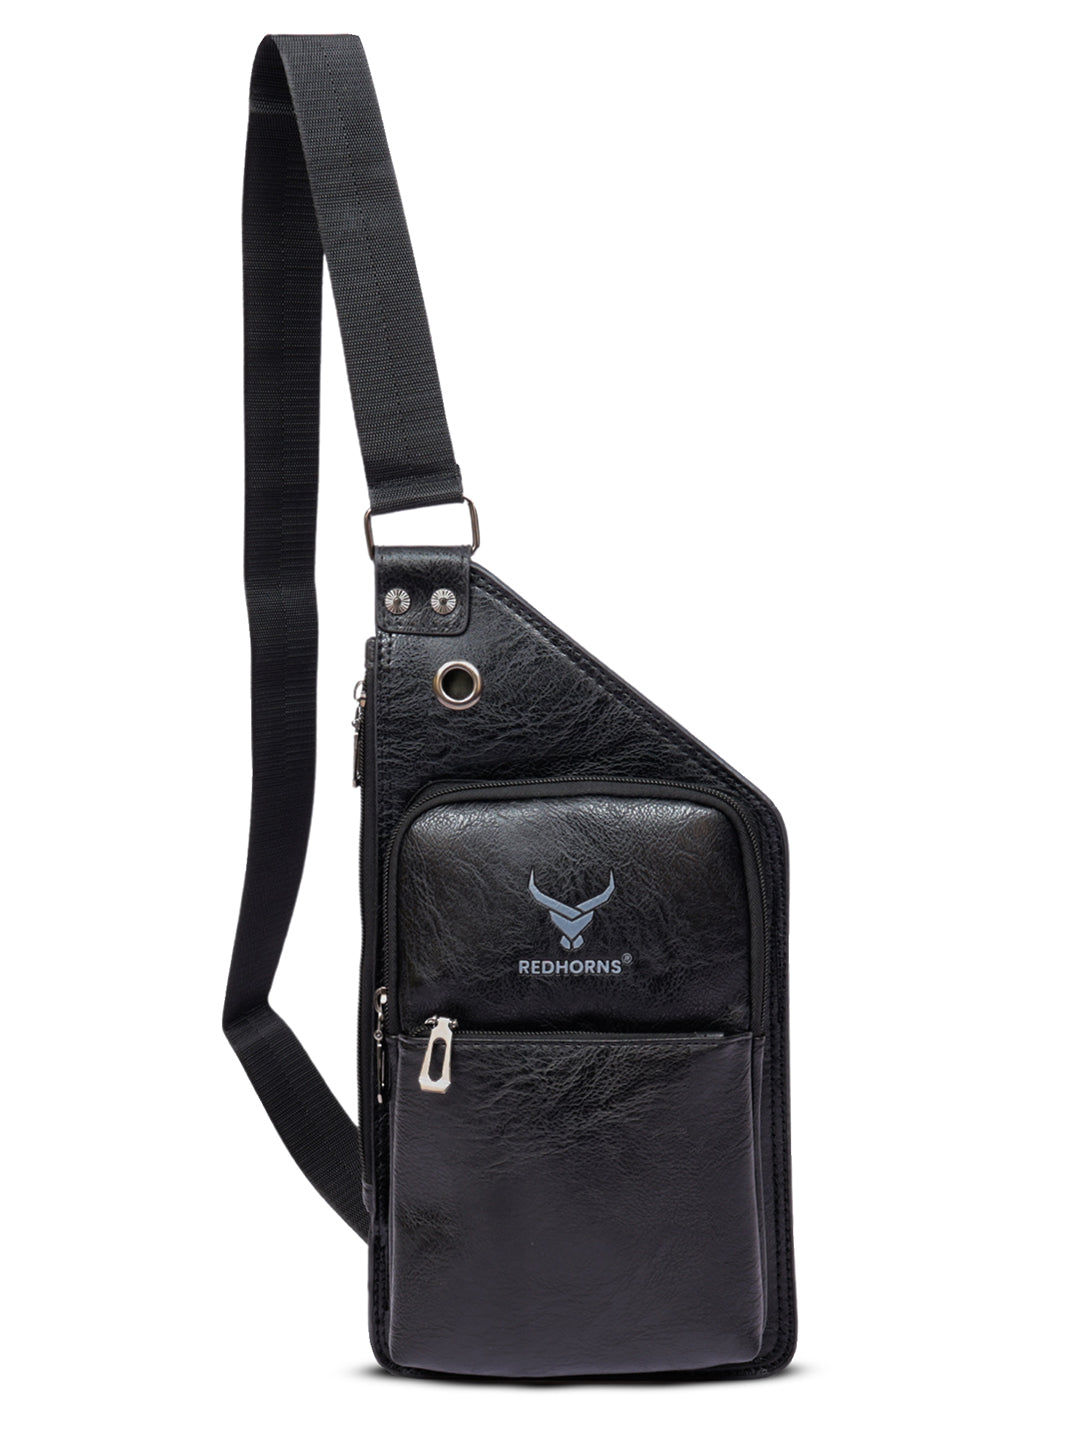 Crossbody sling bag leather messenger bag men bag#color_black